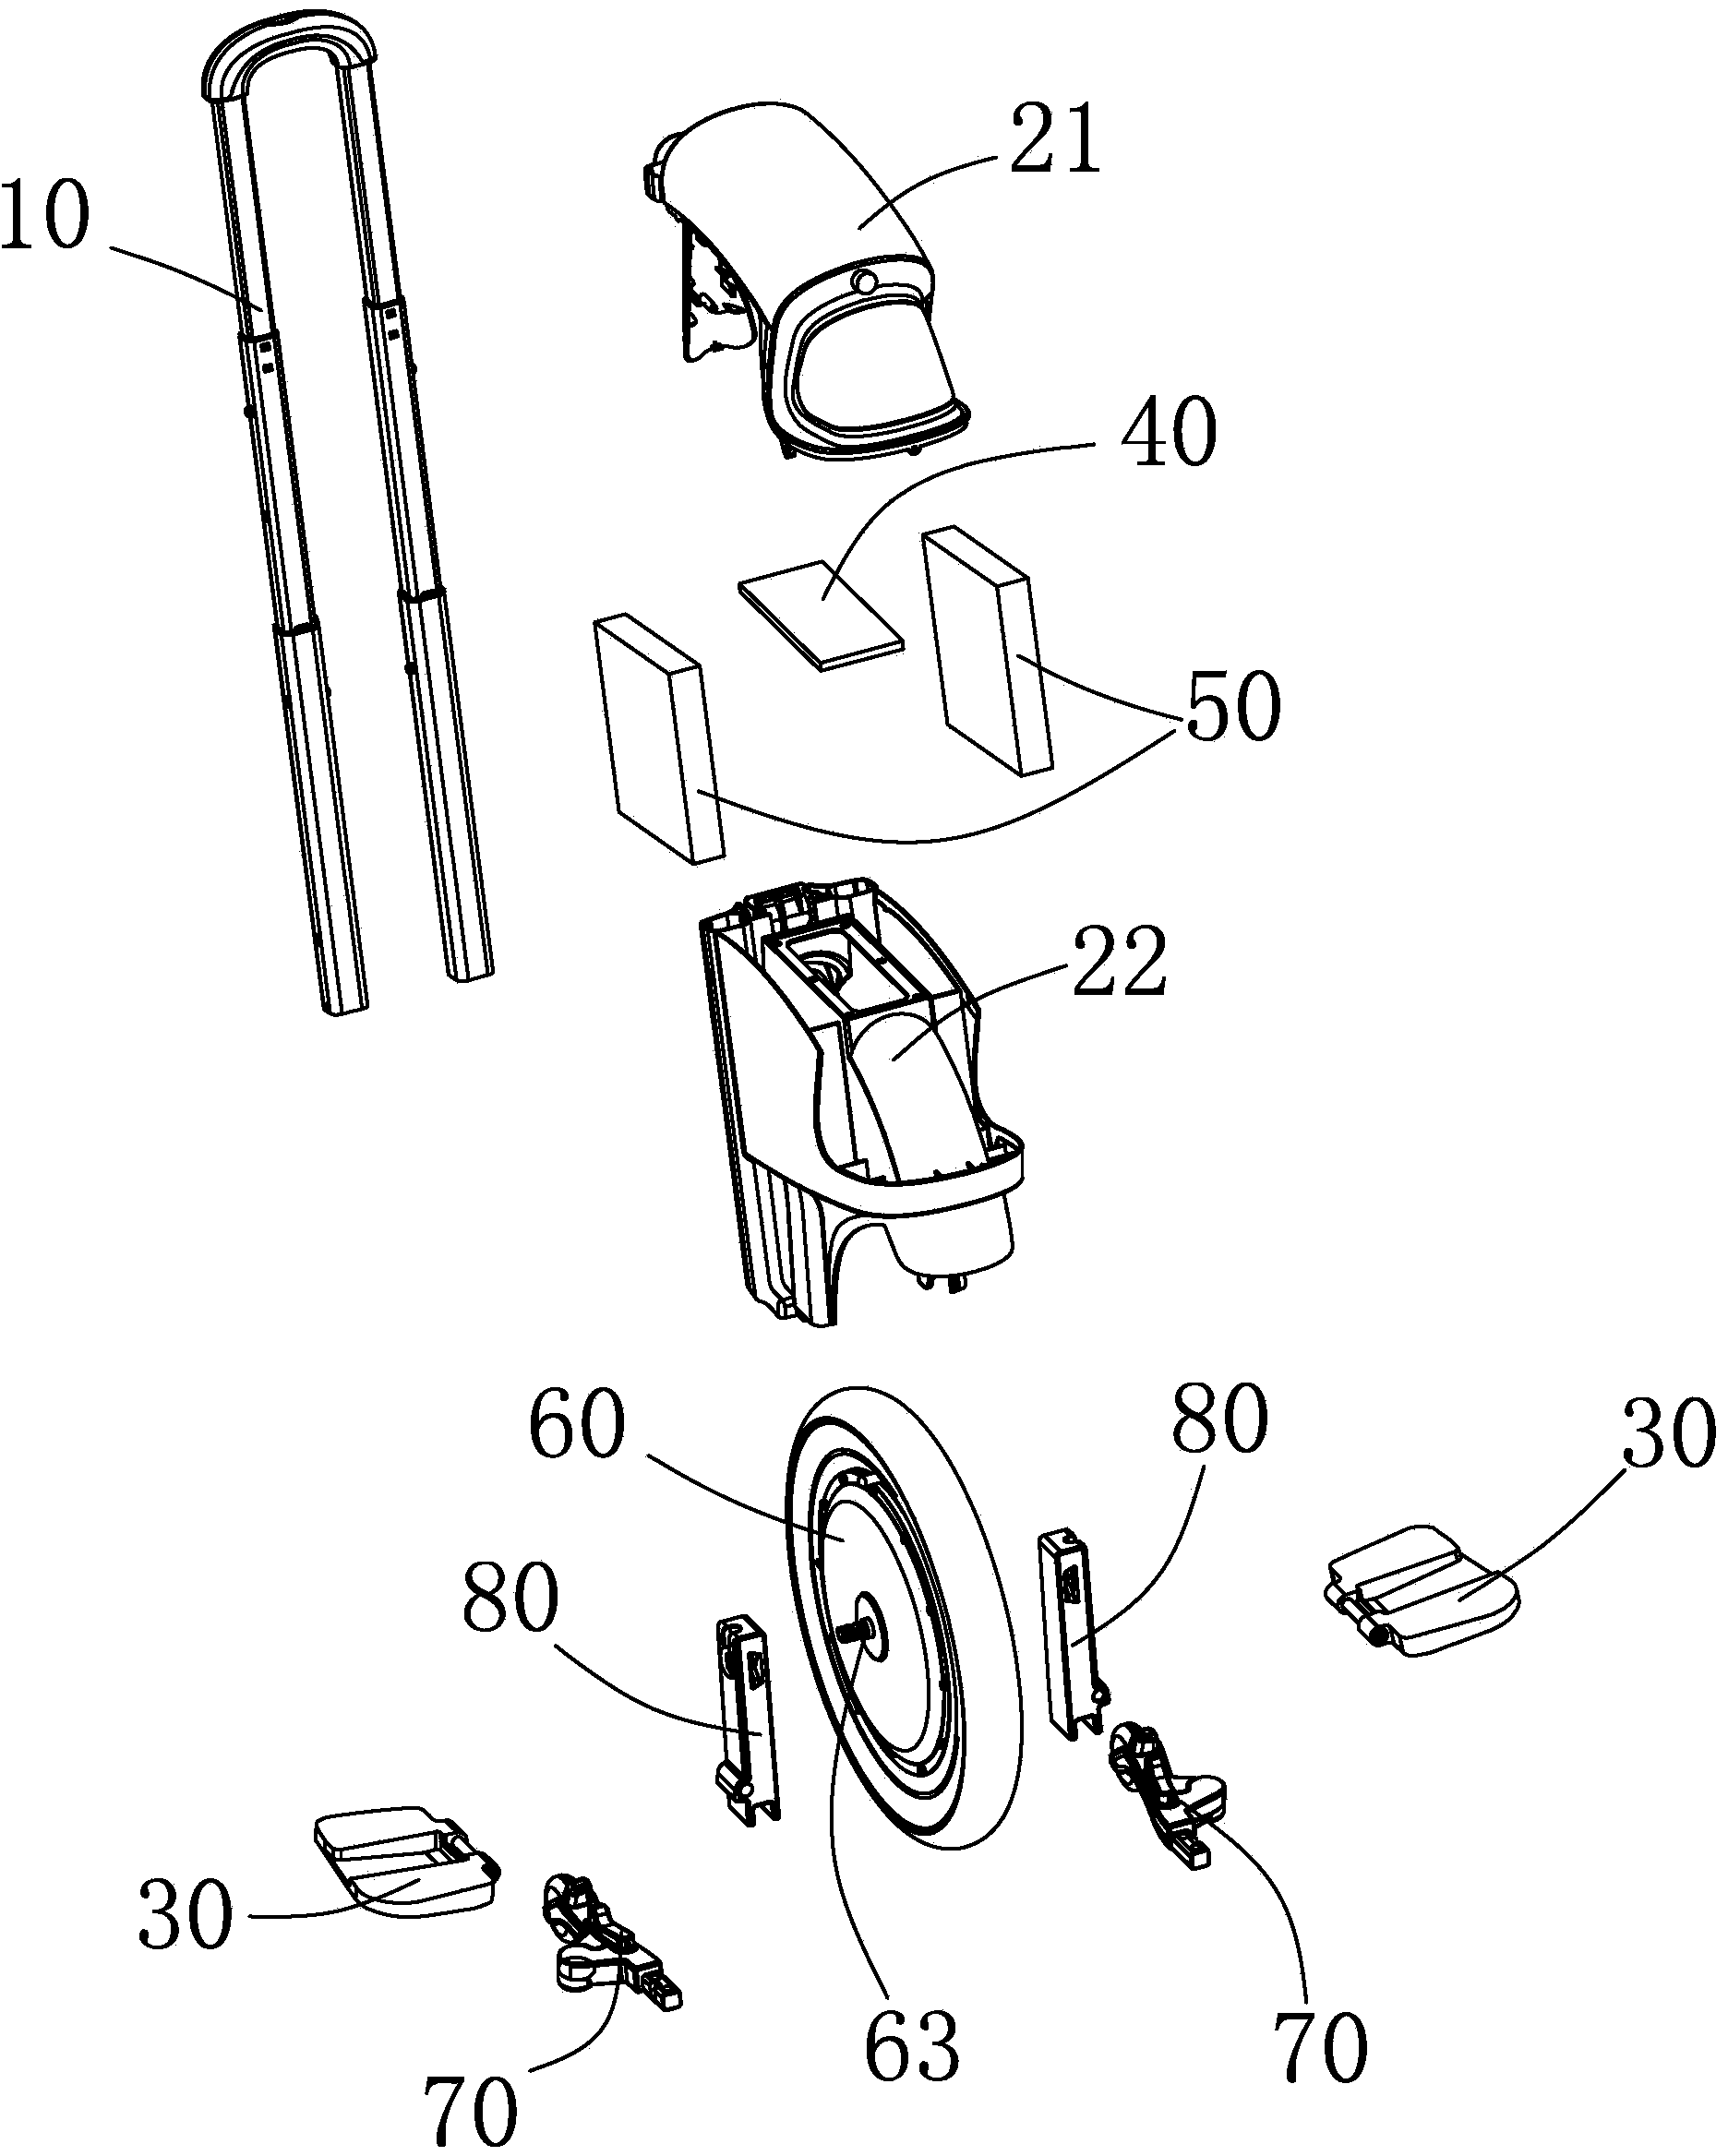 Self-balancing electric monocycle